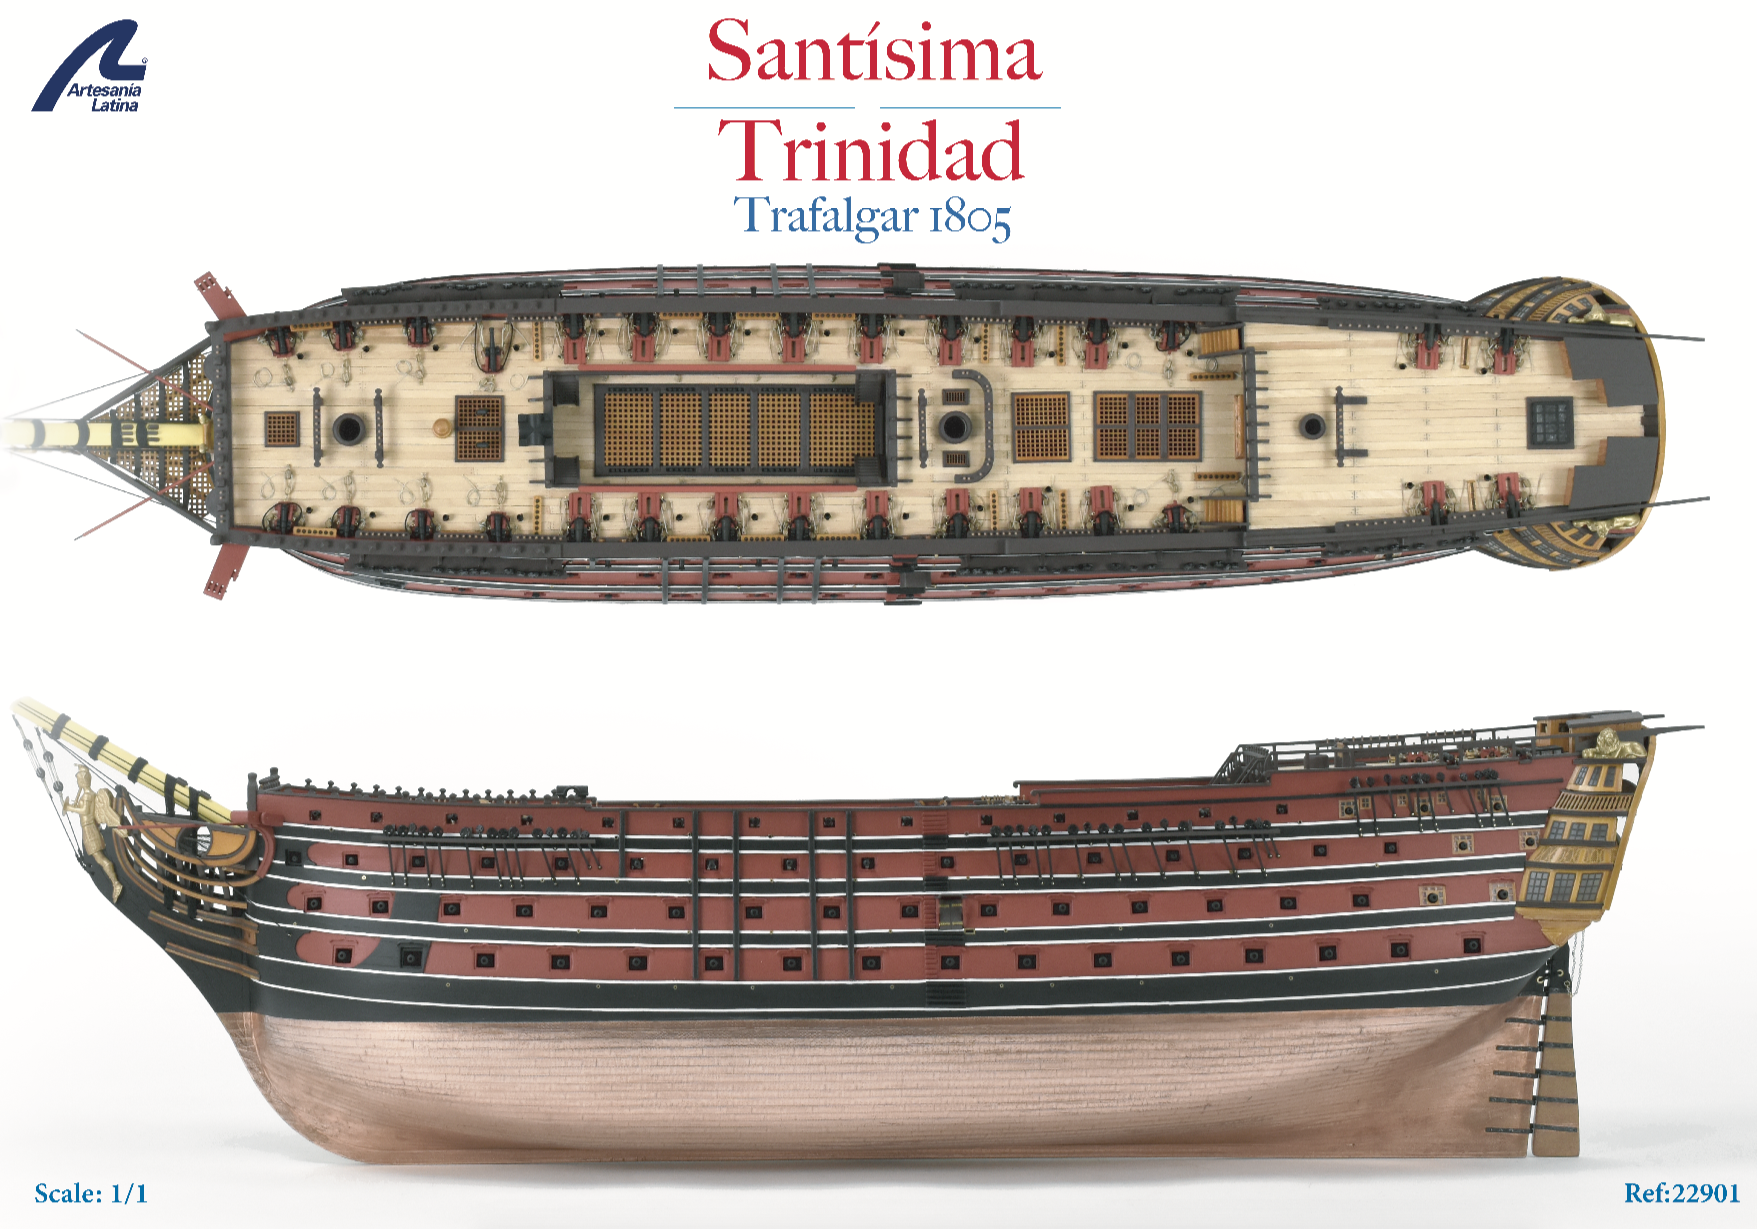 Plano 1:1 de Kit de Modelismo Naval en Madera Navío de Línea Español Santísima Trinidad (22901) de Artesanía Latina.